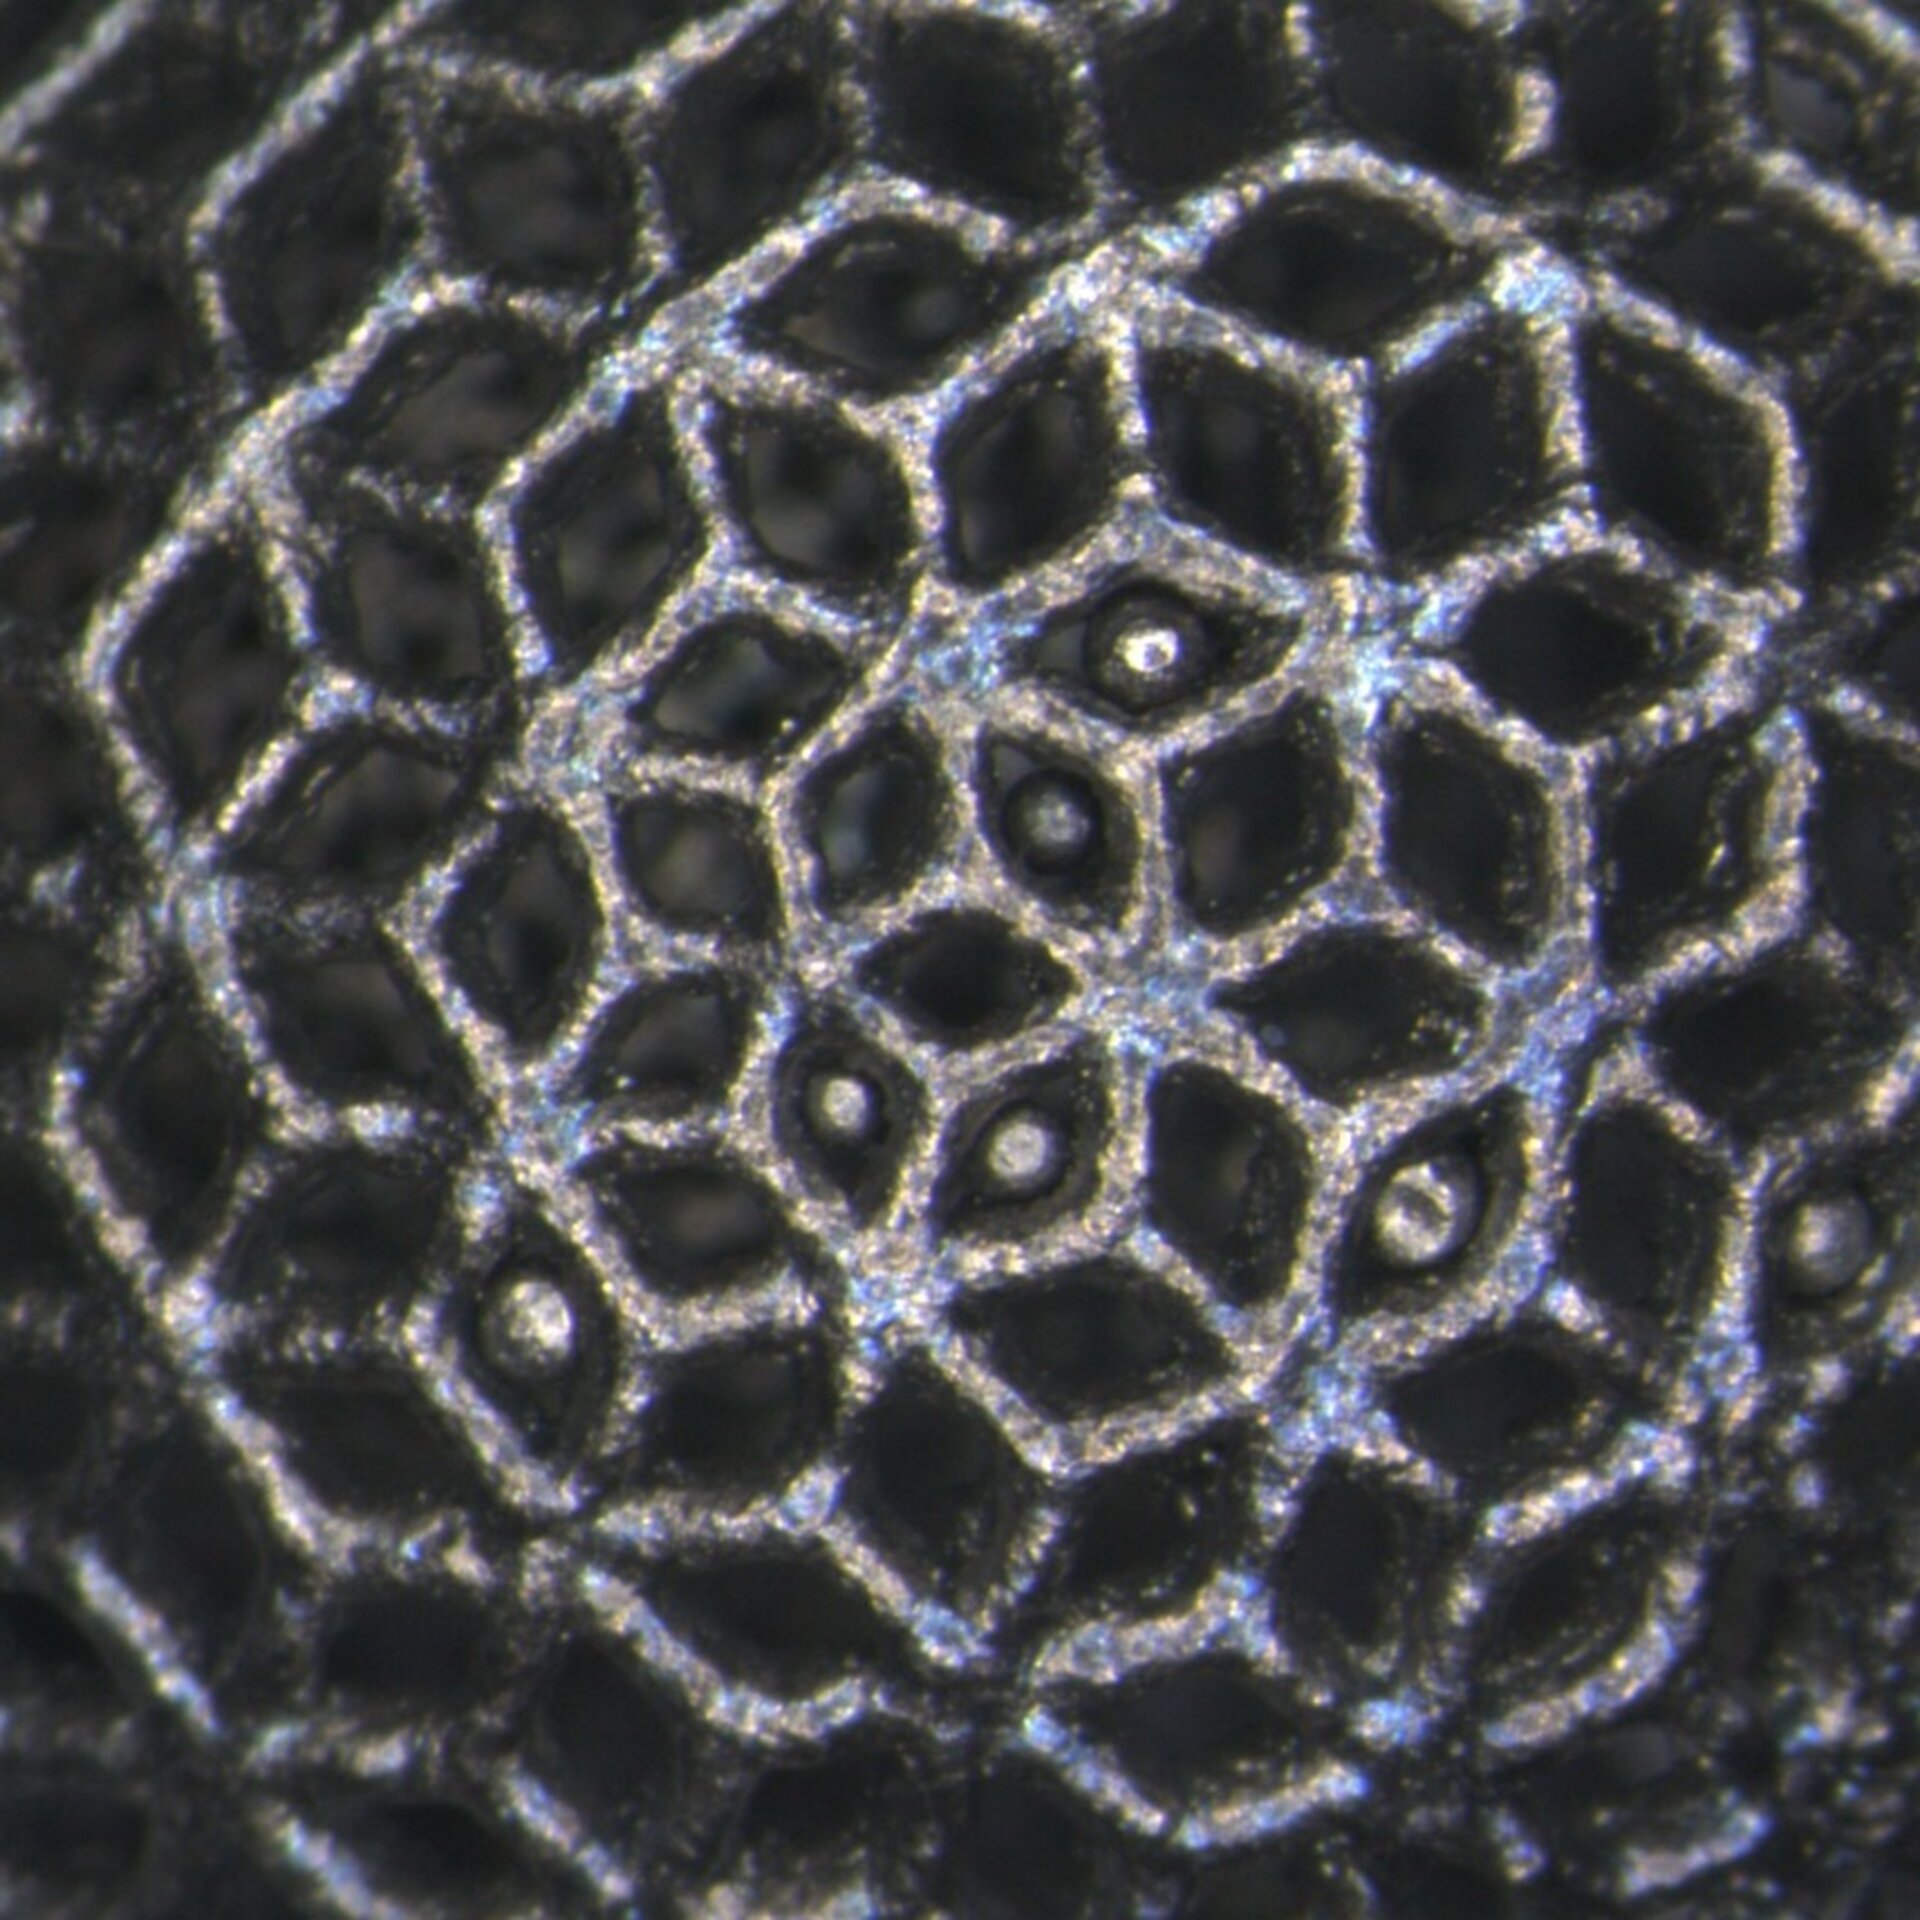 Close-up of 3D-printed titanium lattice ball